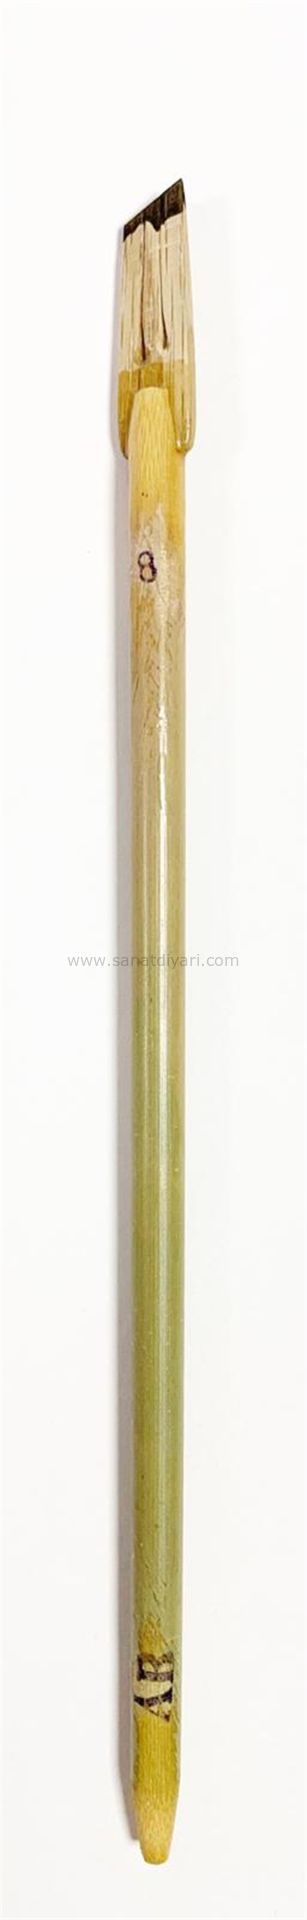 Tiryakiart Şaklı Bambu Kalem 8 mm